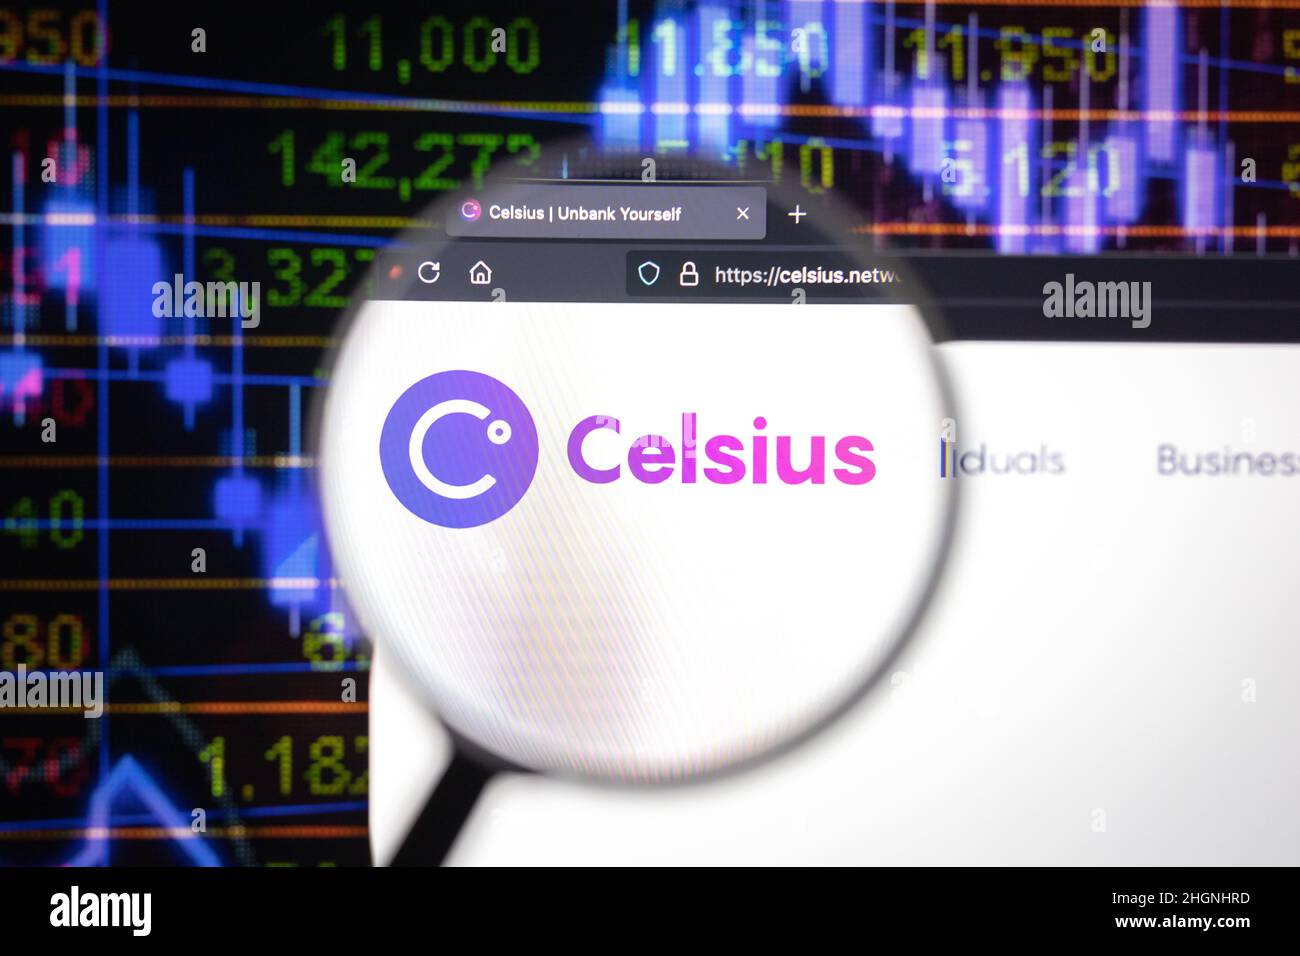 El logotipo de la empresa de cifrado Celsius en un sitio web, visto en la pantalla de una computadora a través de una lupa. Foto de stock